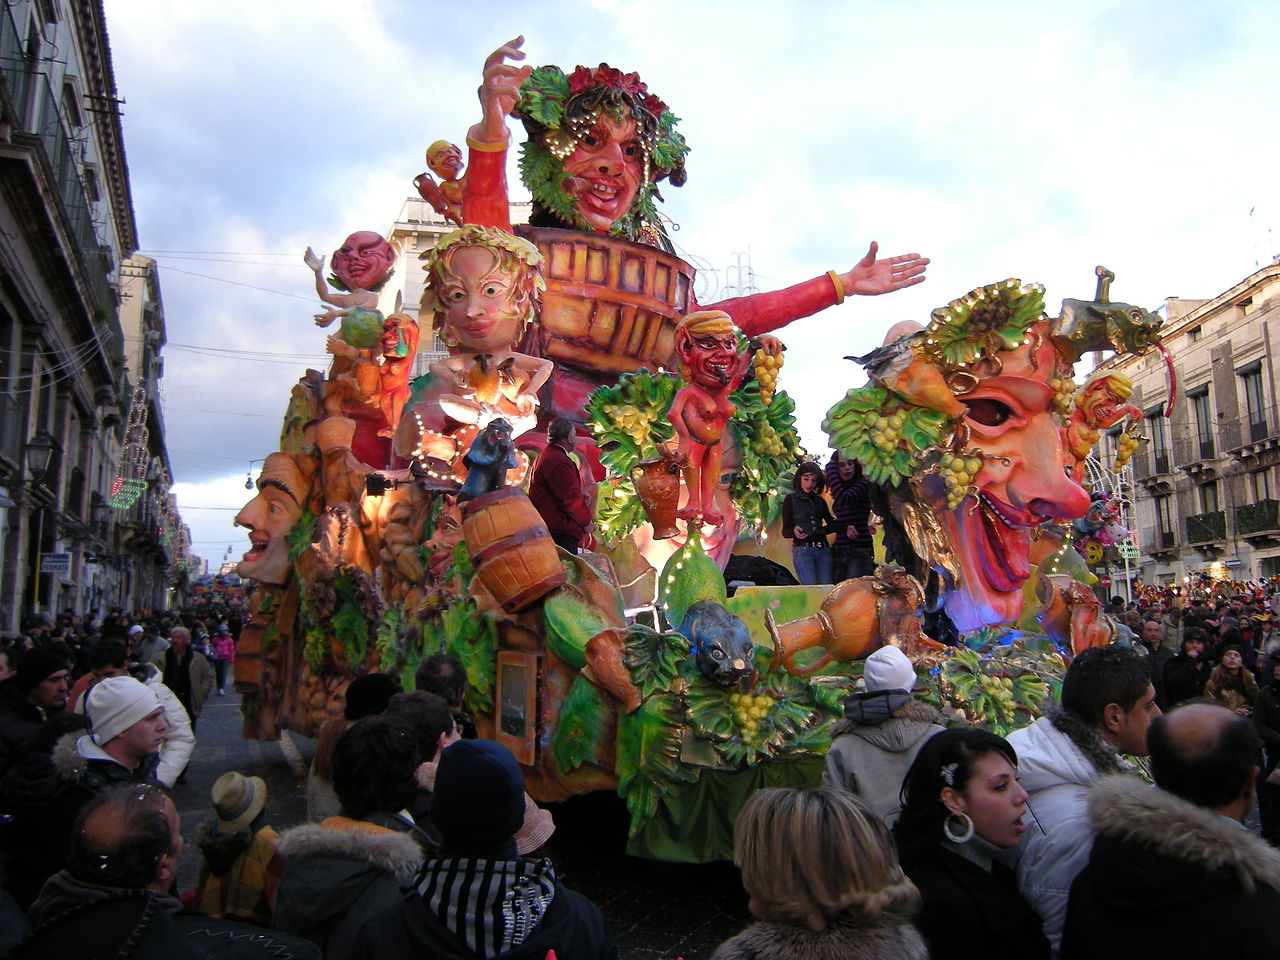 Carnival of Acireale in Sicily